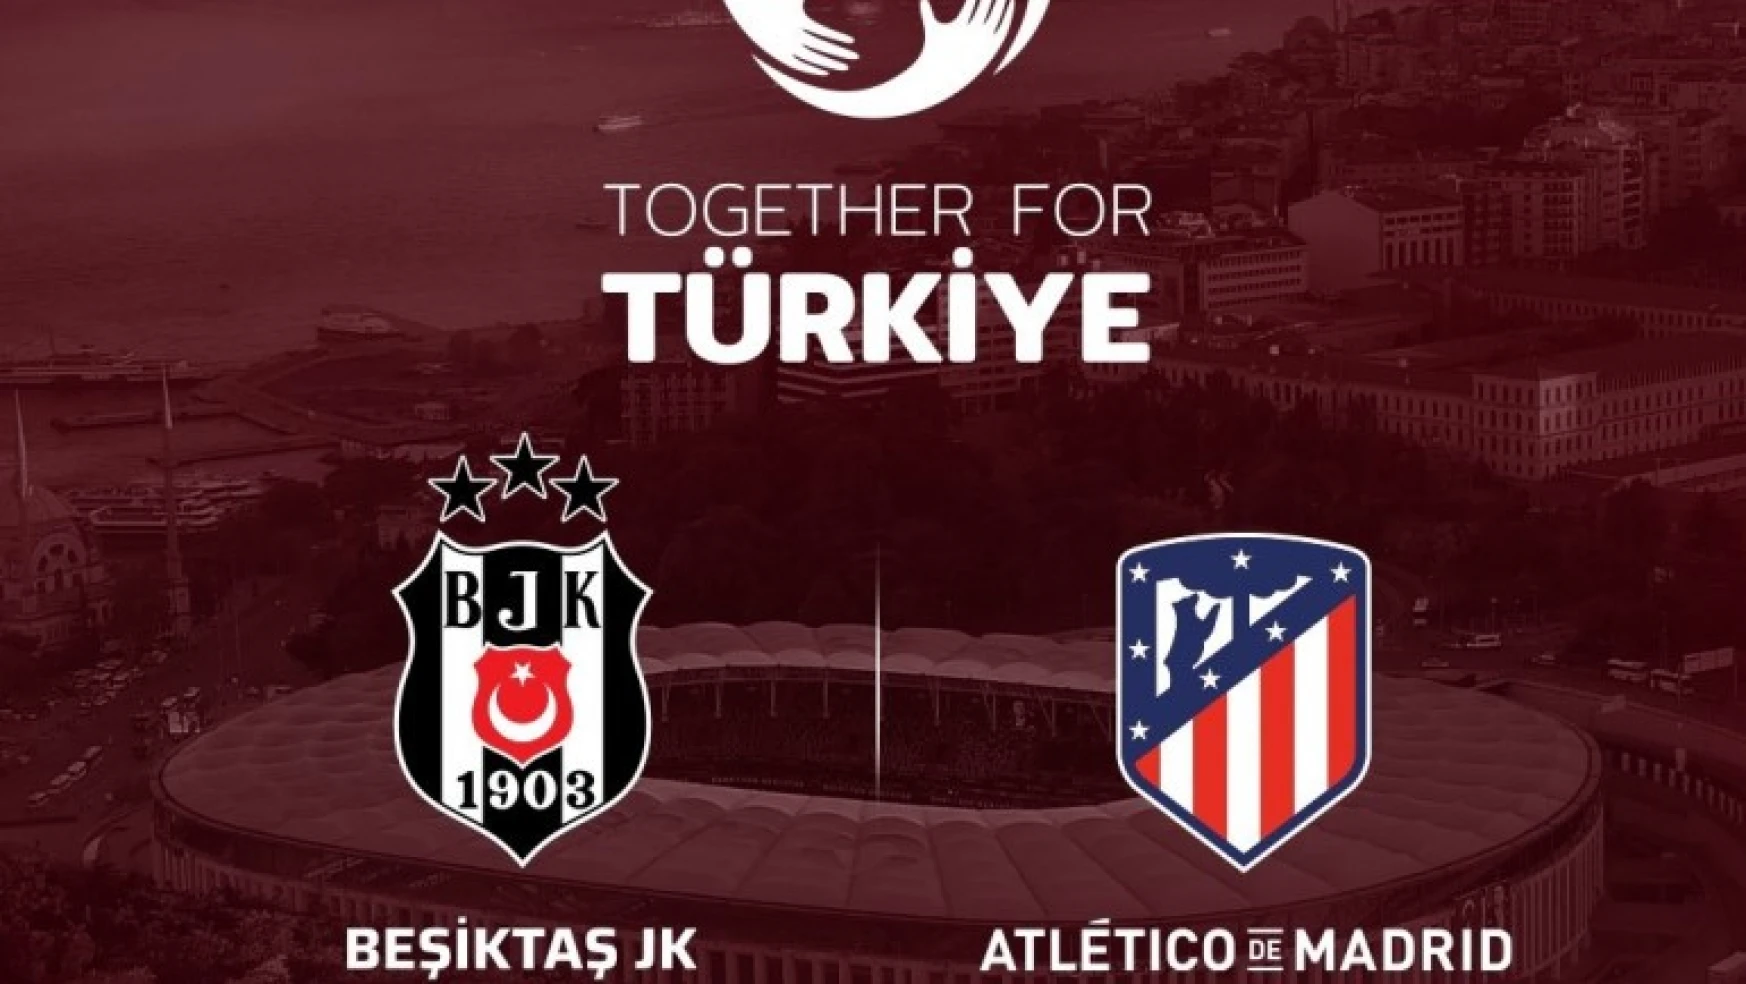 Beşiktaş ile Atletico Madrid, depremzedeler için karşılaşacak